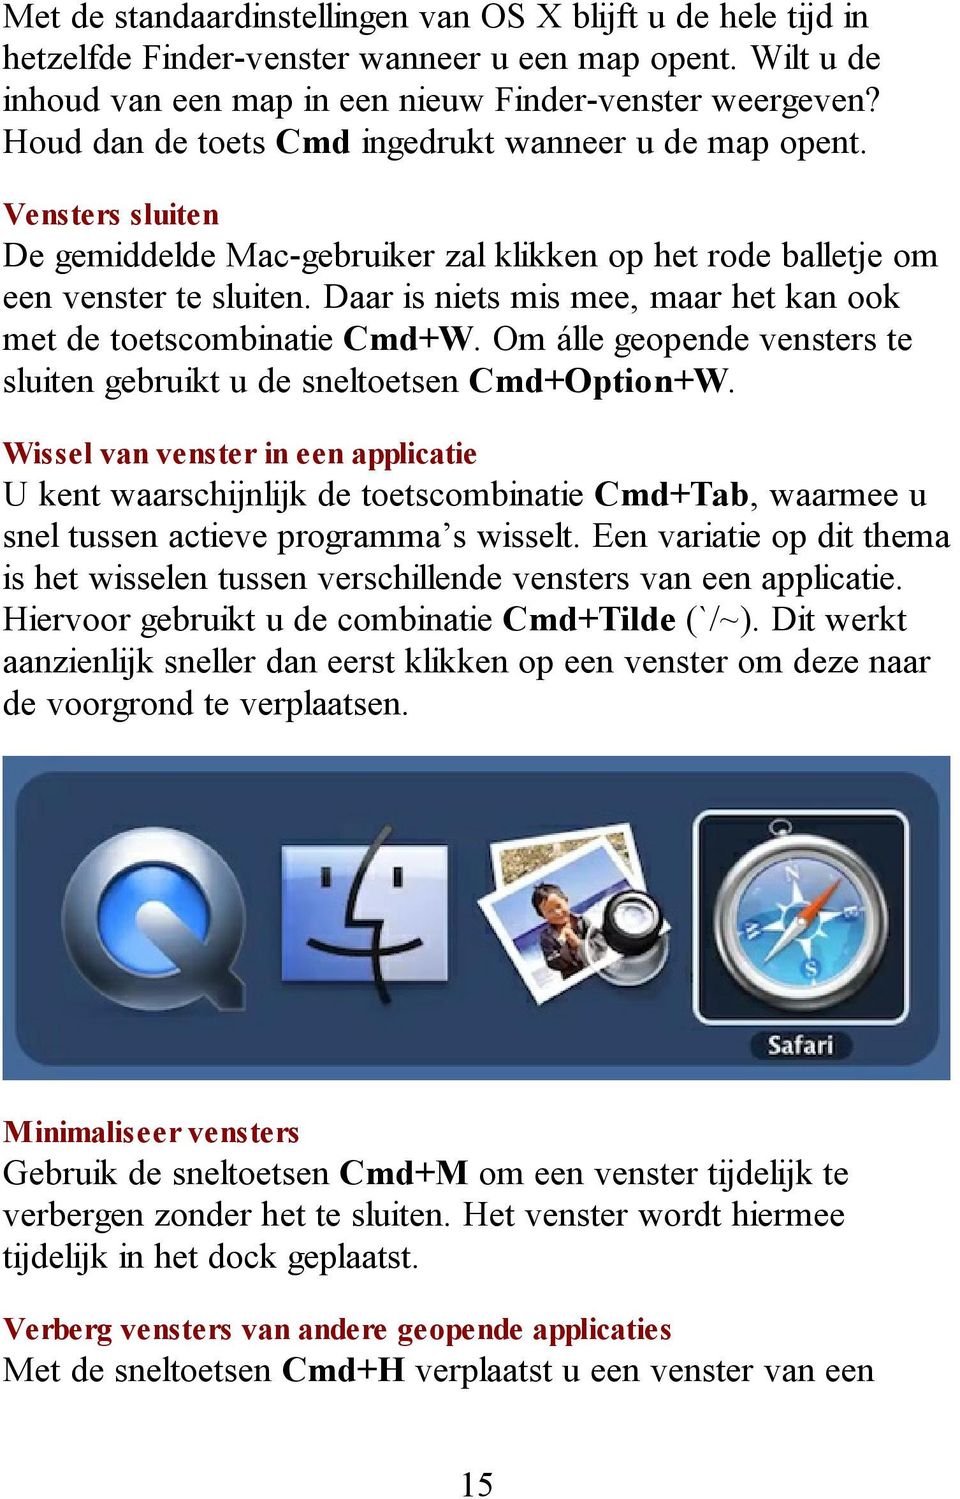 Daar is niets mis mee, maar het kan ook met de toetscombinatie Cmd+W. Om álle geopende vensters te sluiten gebruikt u de sneltoetsen Cmd+Option+W.